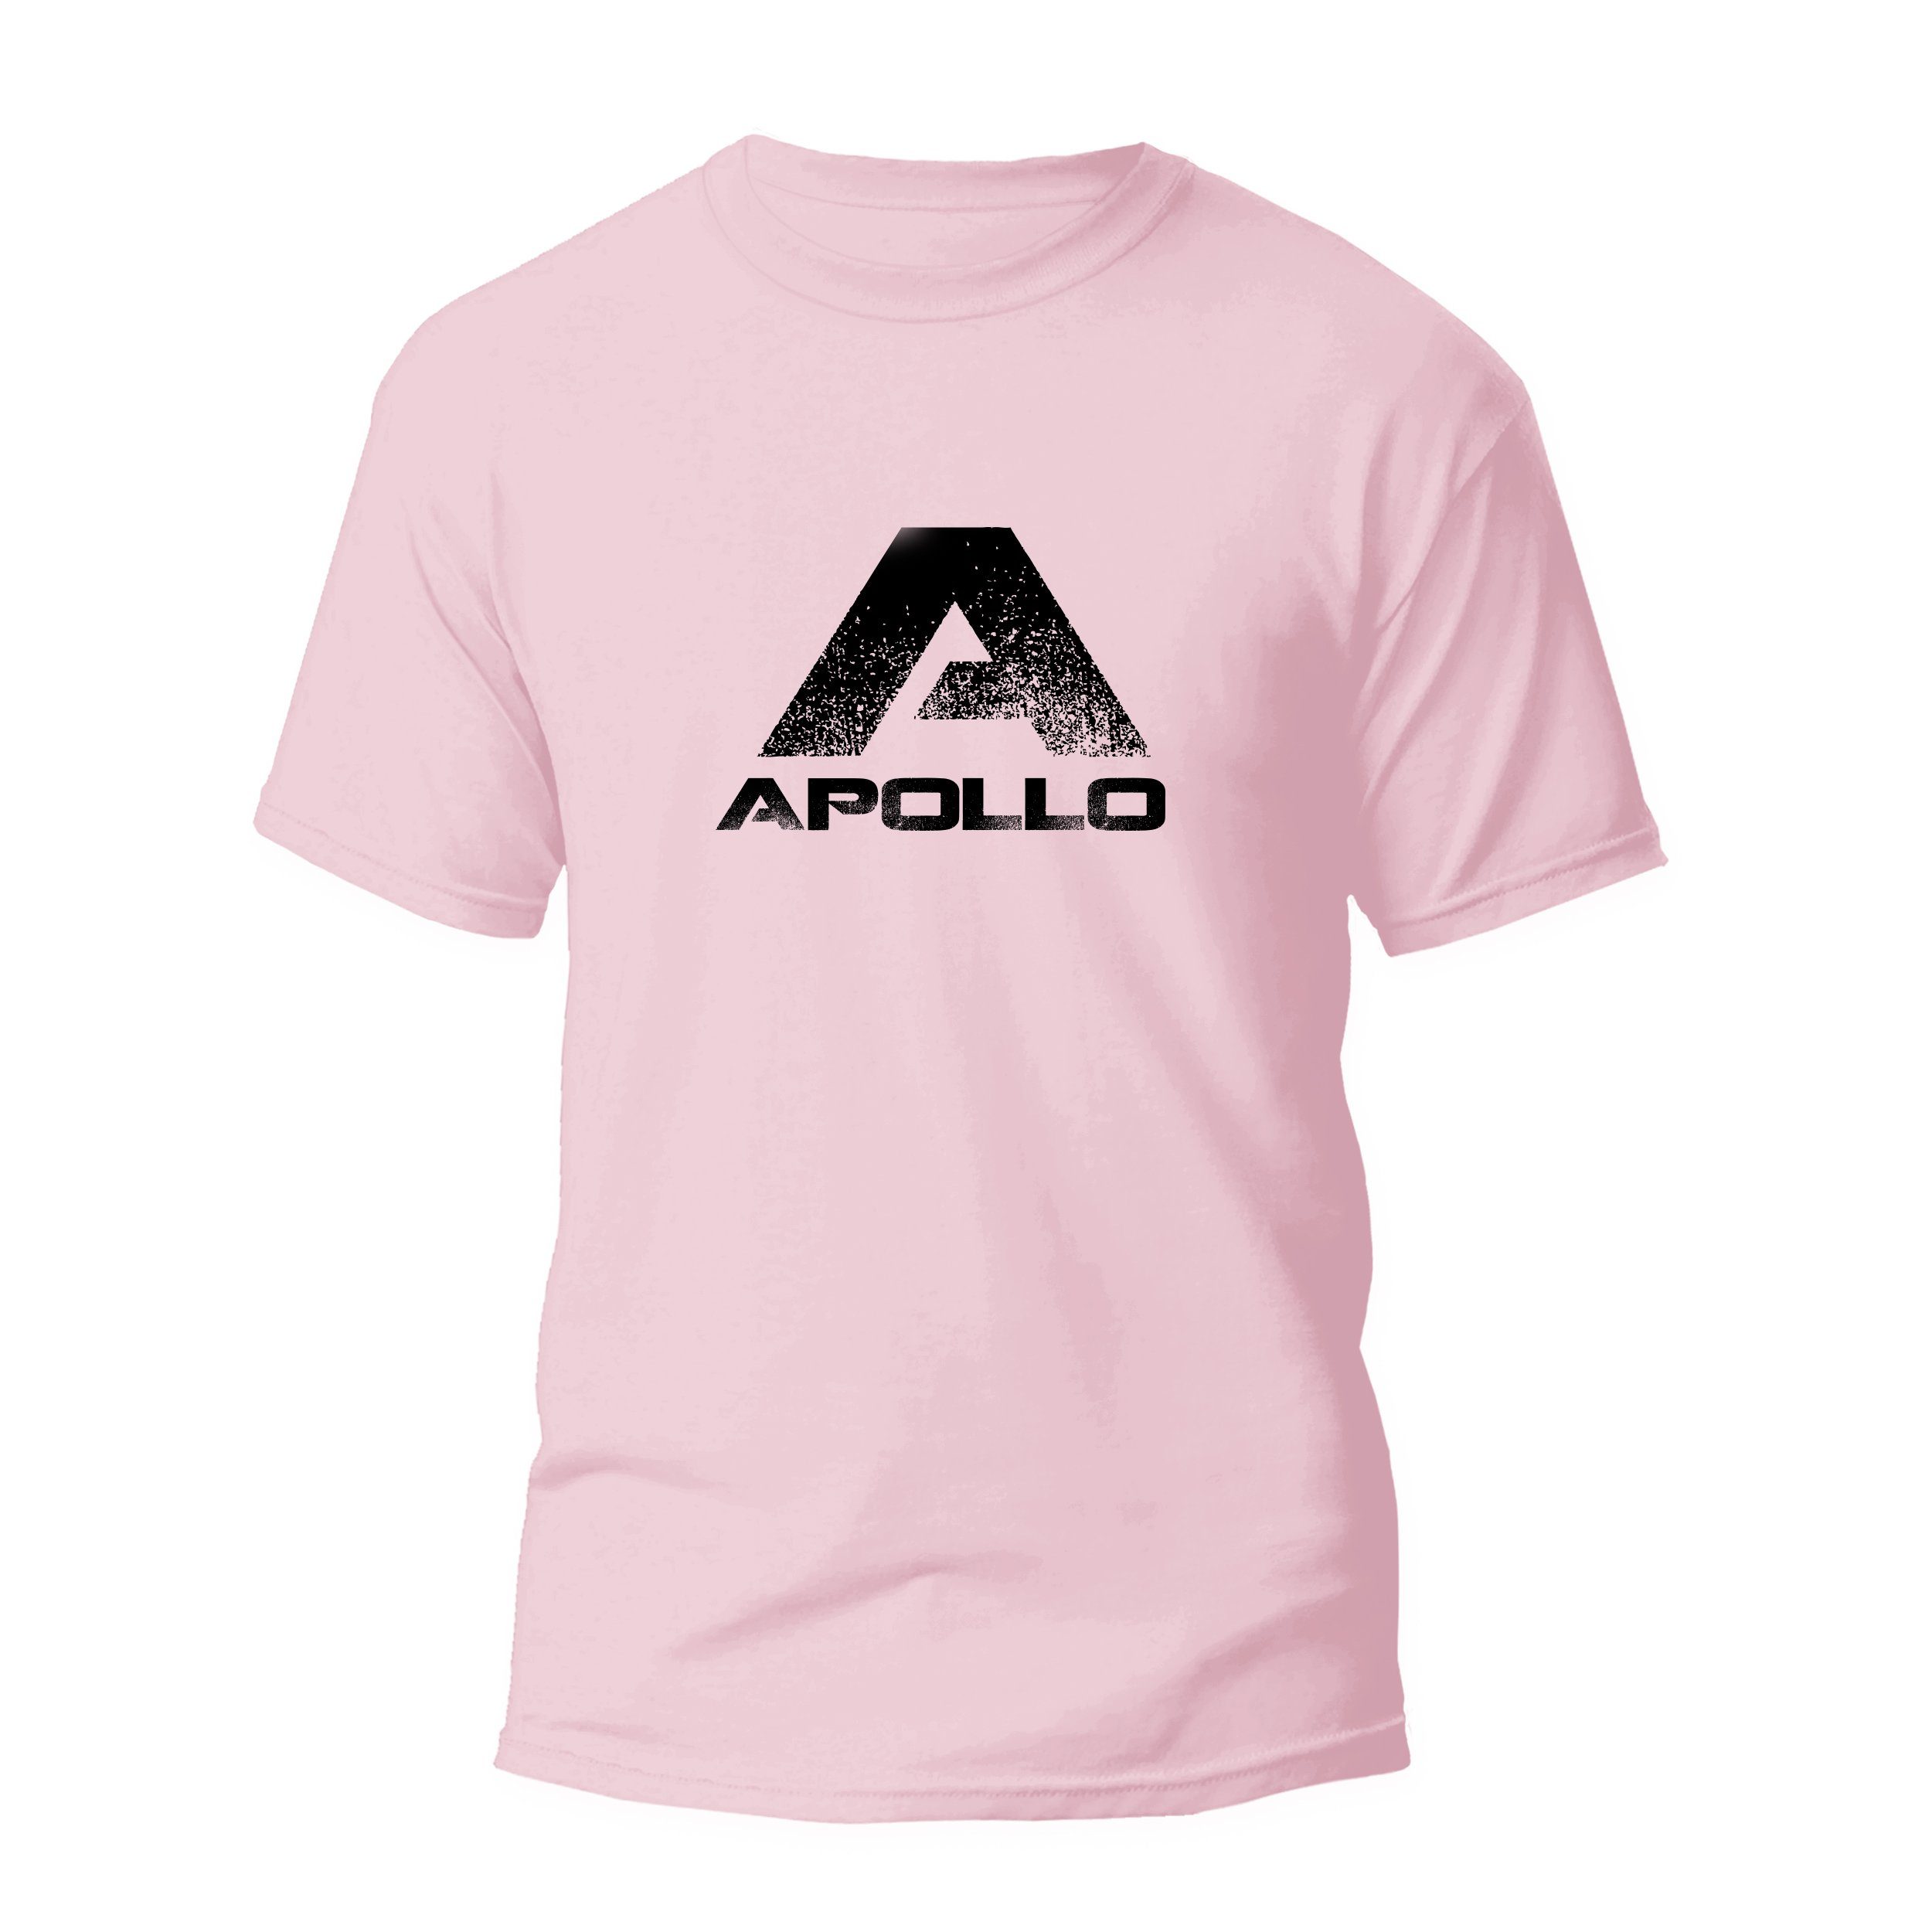 Apollo T-Shirt Sportshirt, atmungsaktives, kurzarmiges Shirt, Unisex, Größe S-XXL bequem, aus reiner Baumwolle